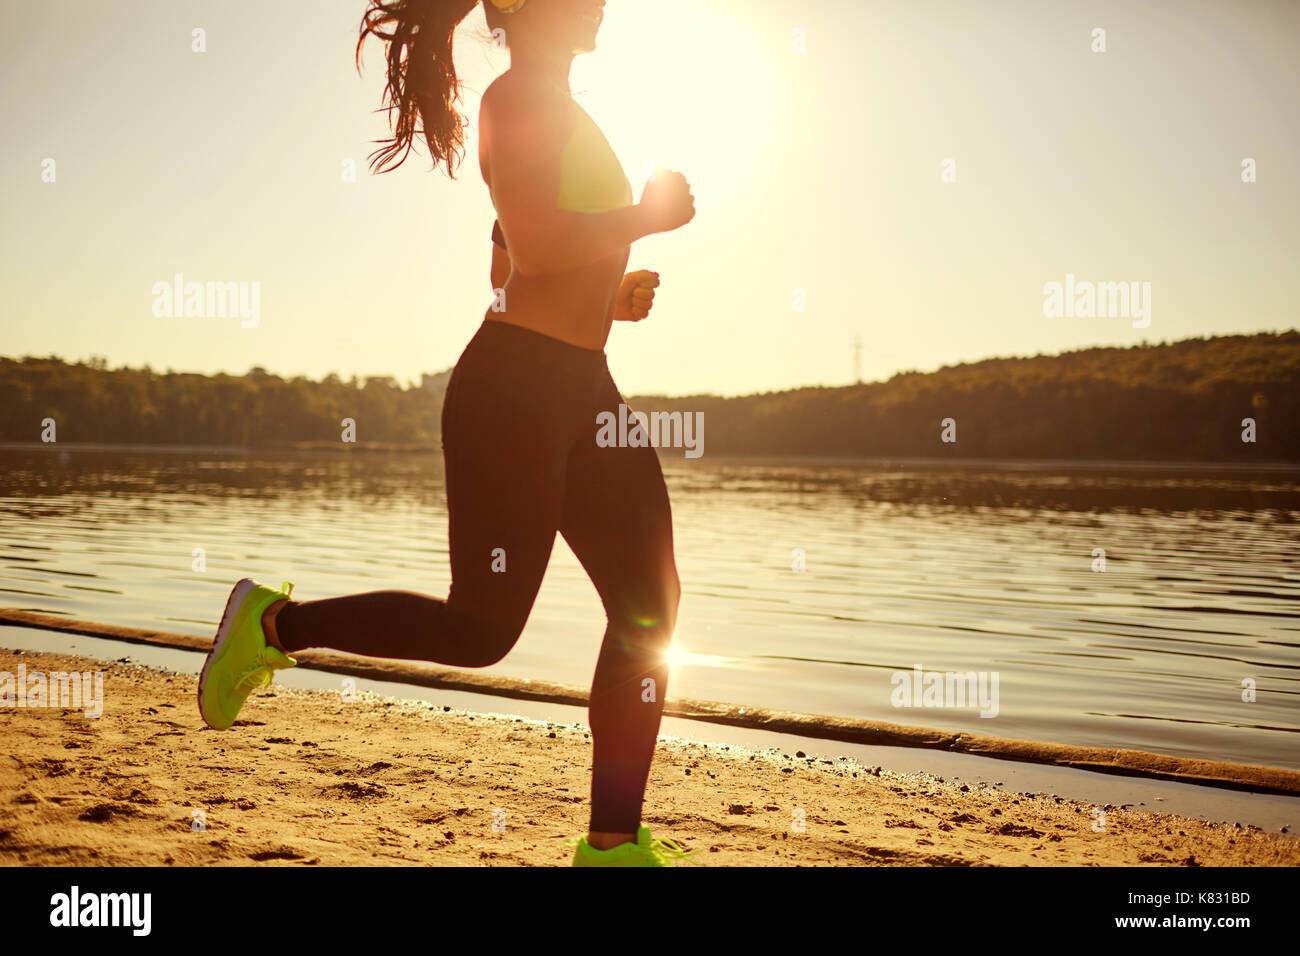 Una bruna runner donna corre nel parco jogging Foto Stock